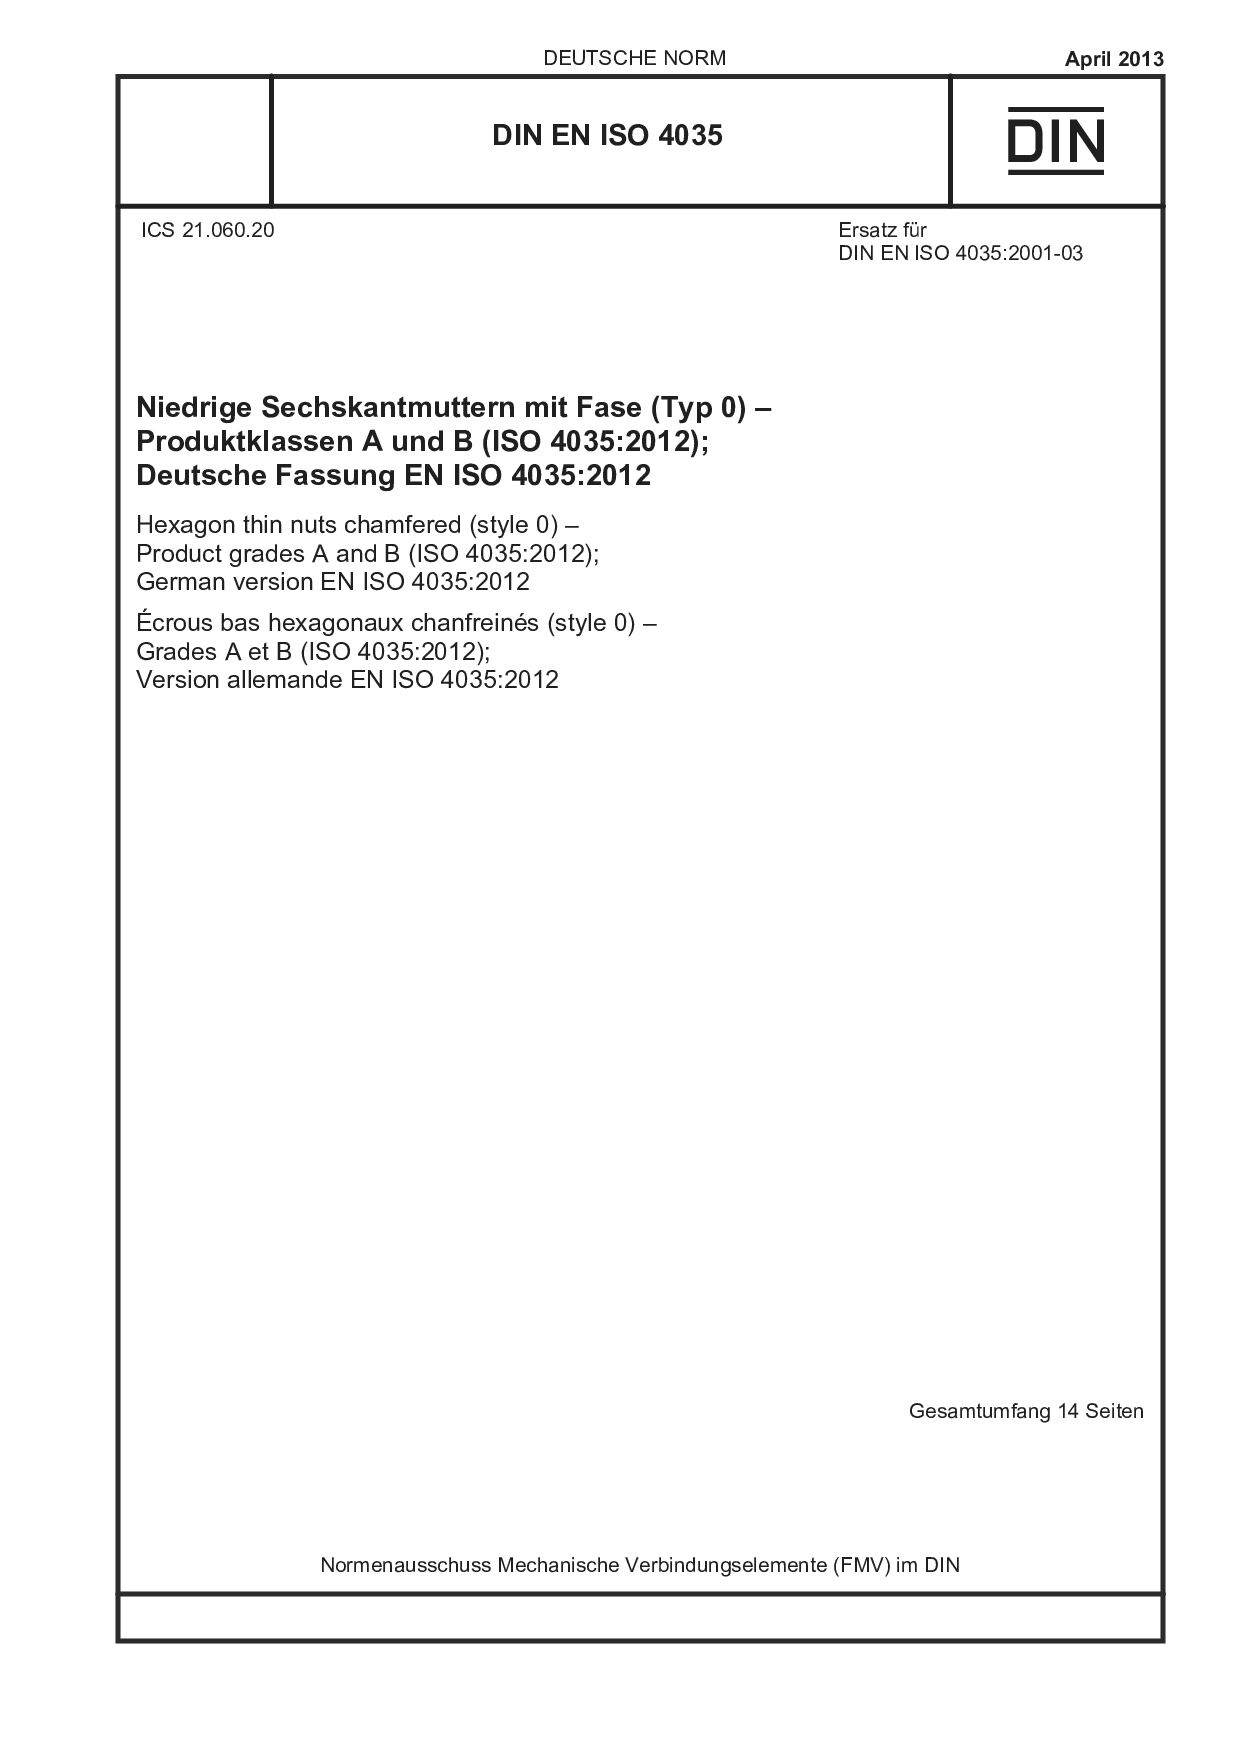 DIN EN ISO 4035:2013-04